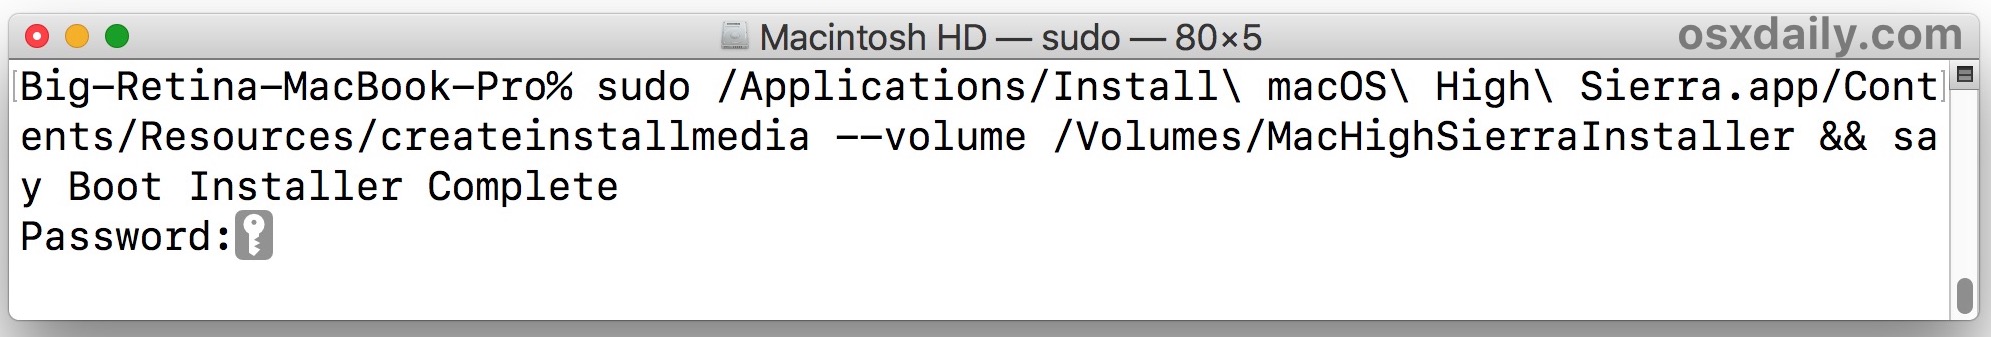 синтаксис команды для создания установщика загрузки macOS High Sierra